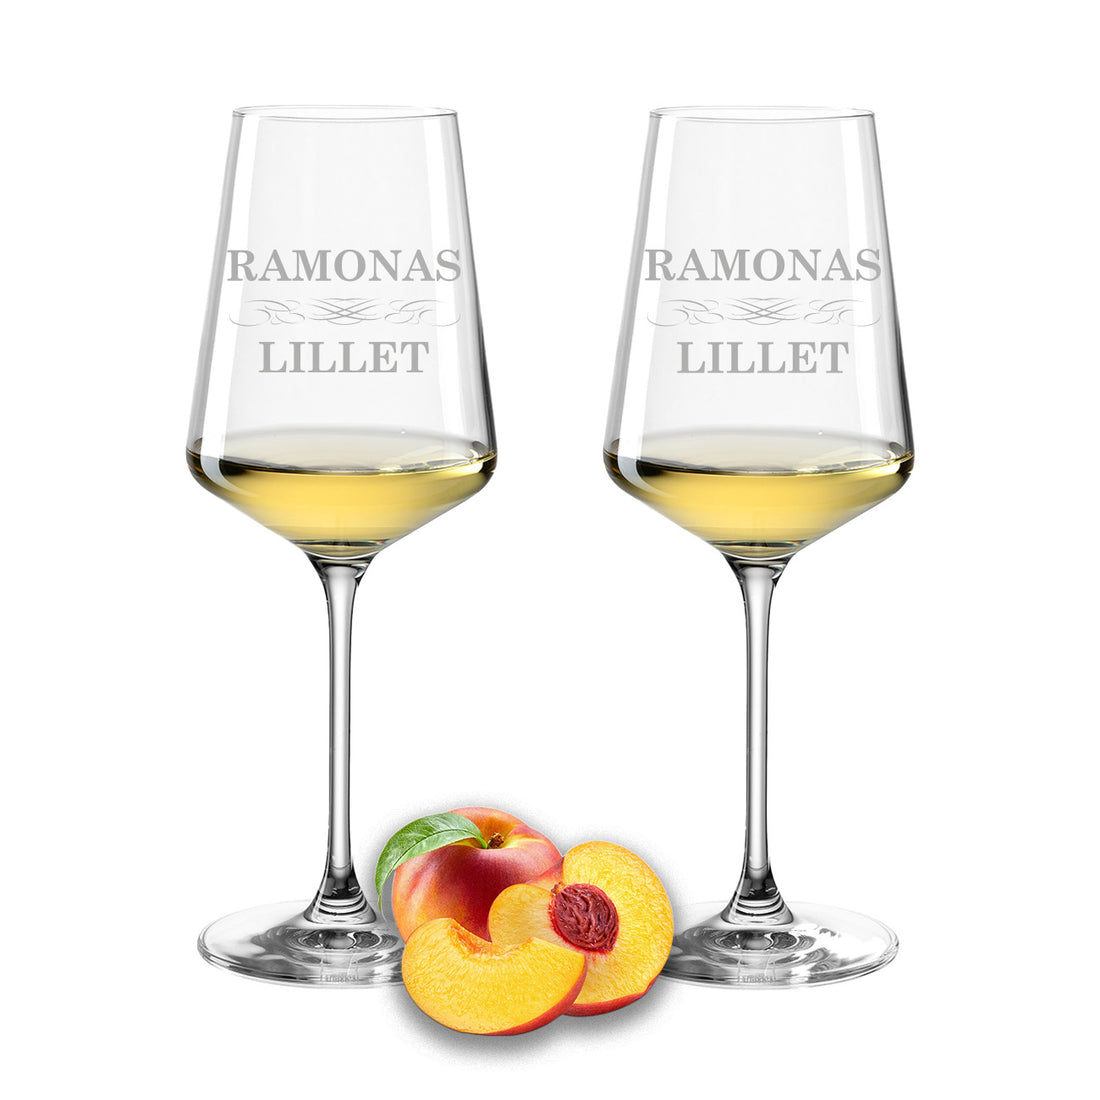 Weinglas mit Gravur Leonardo Puccini "LILLET" 2 Gläser mit Wunschname